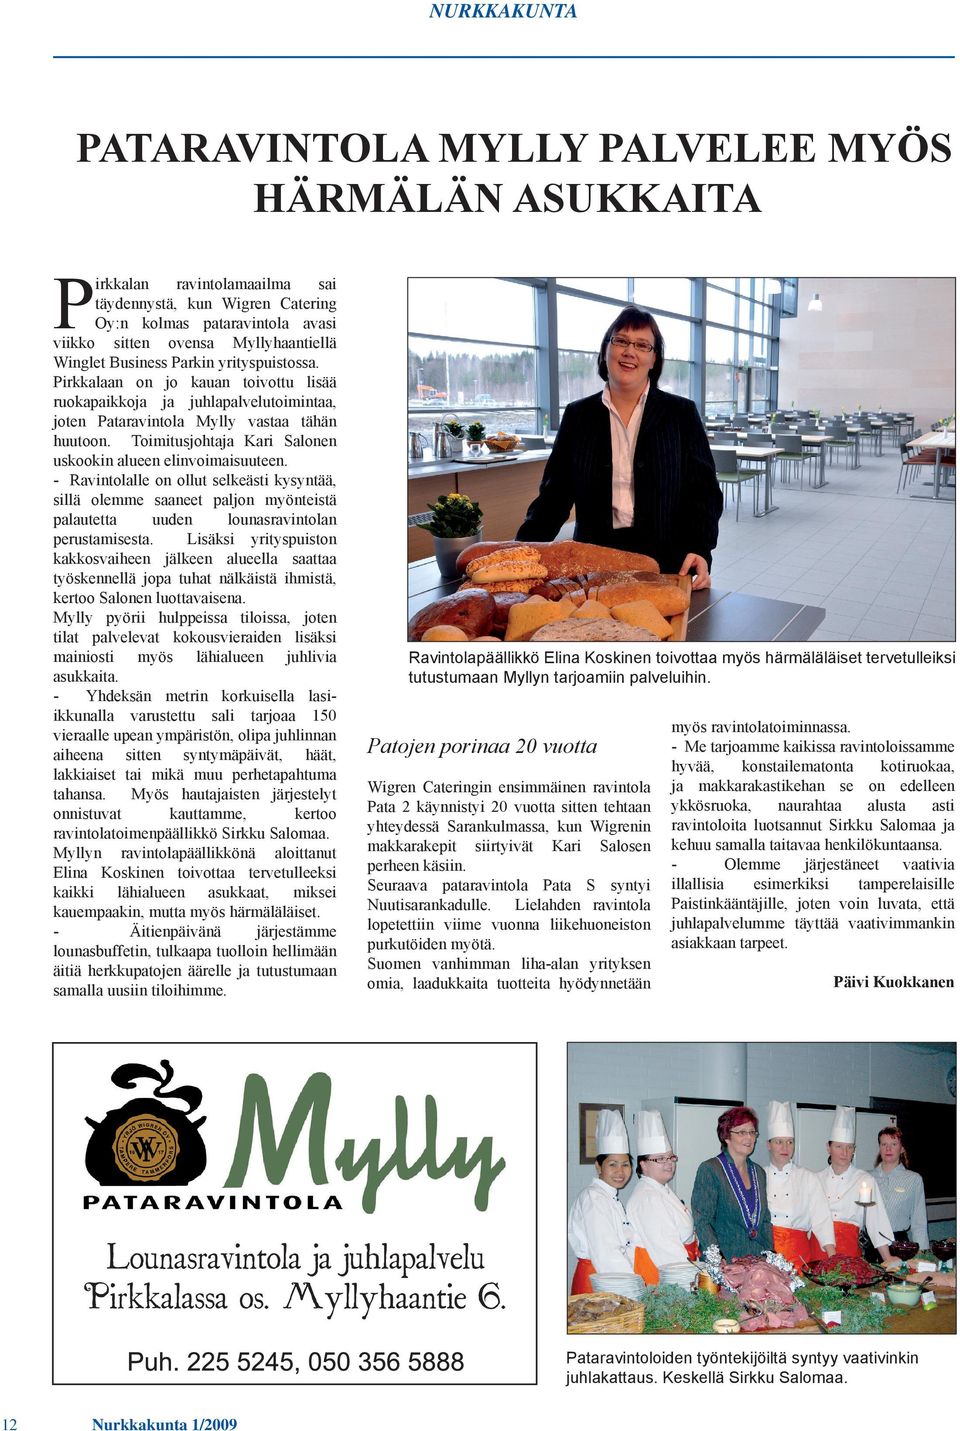 Toimitusjohtaja Kari Salonen uskookin alueen elinvoimaisuuteen. - Ravintolalle on ollut selkeästi kysyntää, sillä olemme saaneet paljon myönteistä palautetta uuden lounasravintolan perustamisesta.